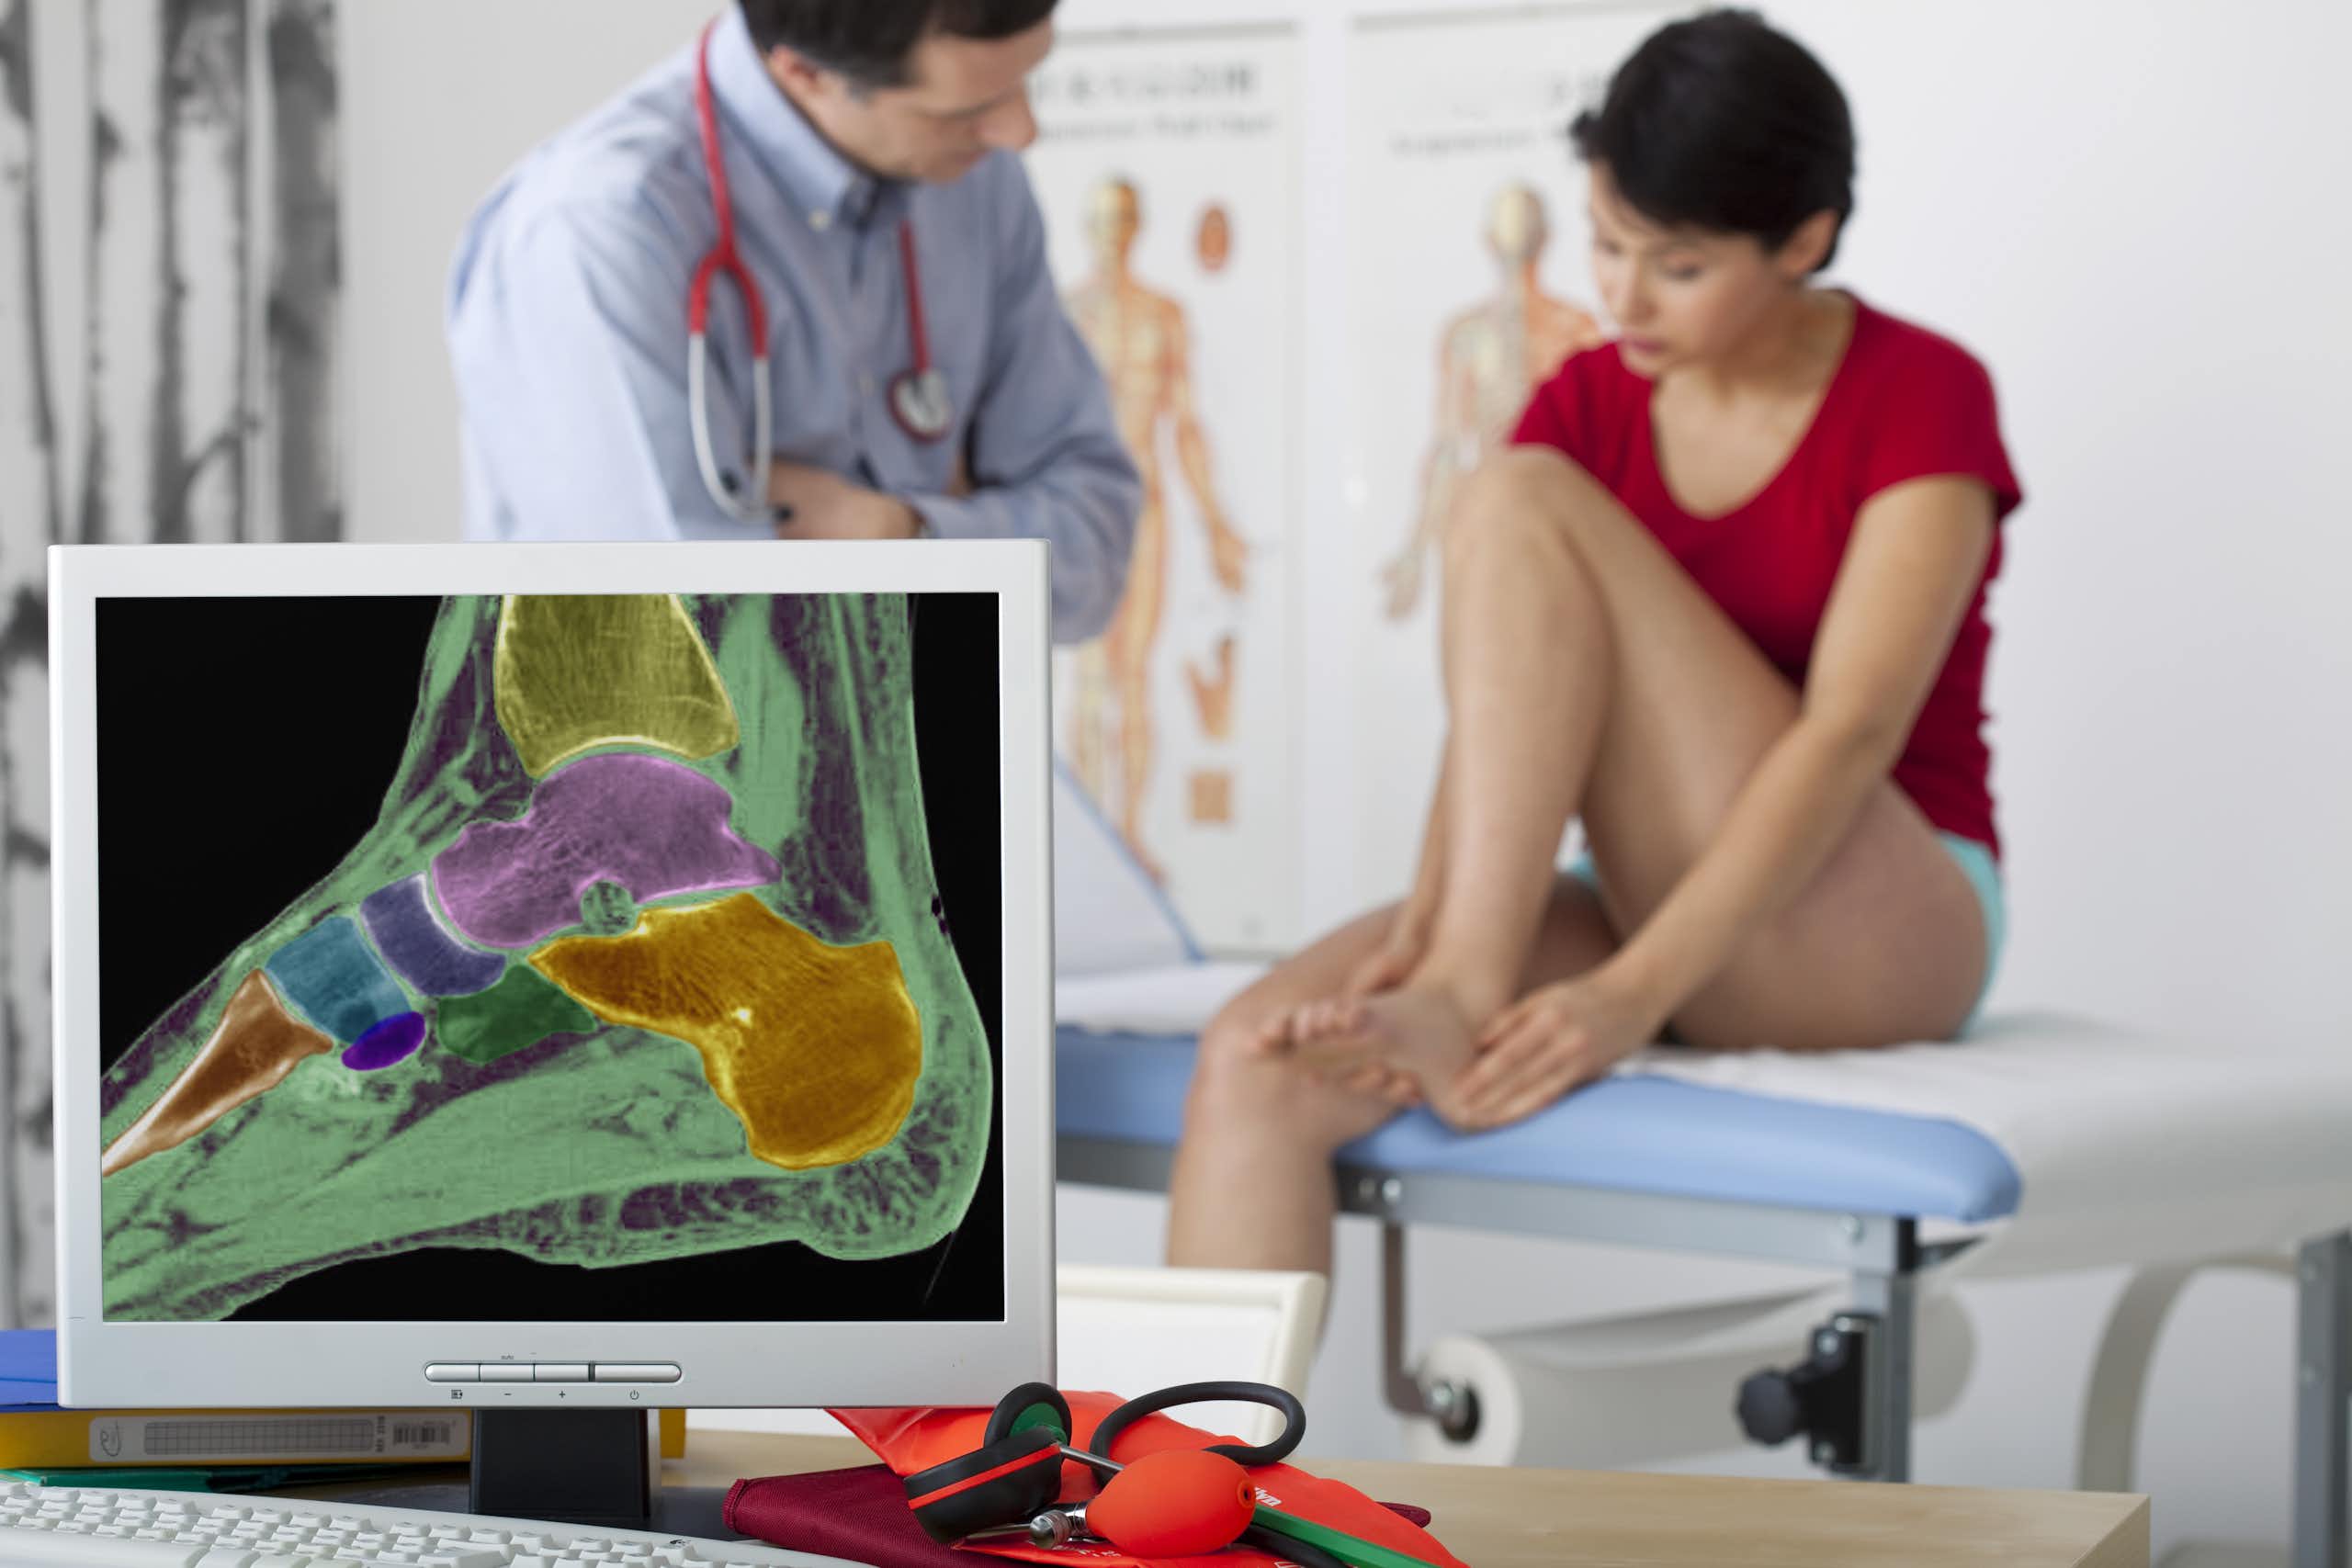 Une femme est en consultation avec un médecin à qui elle montre sa cheville. Au premier plan, on voit une radiographie de sa cheville.